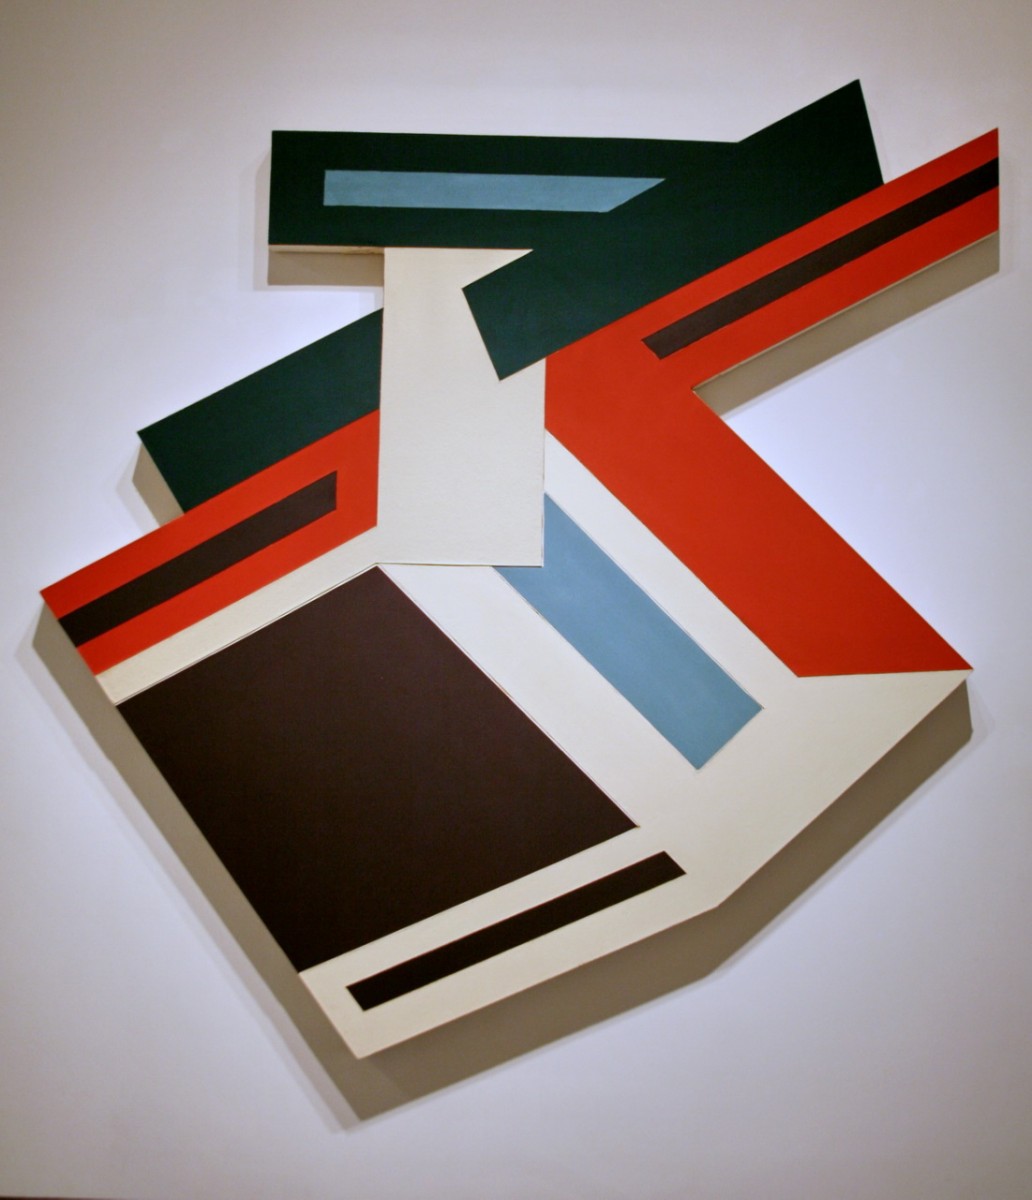 Praca Franka Stelli. Kolorowe geometryczne kształty - romby, prostokąty.